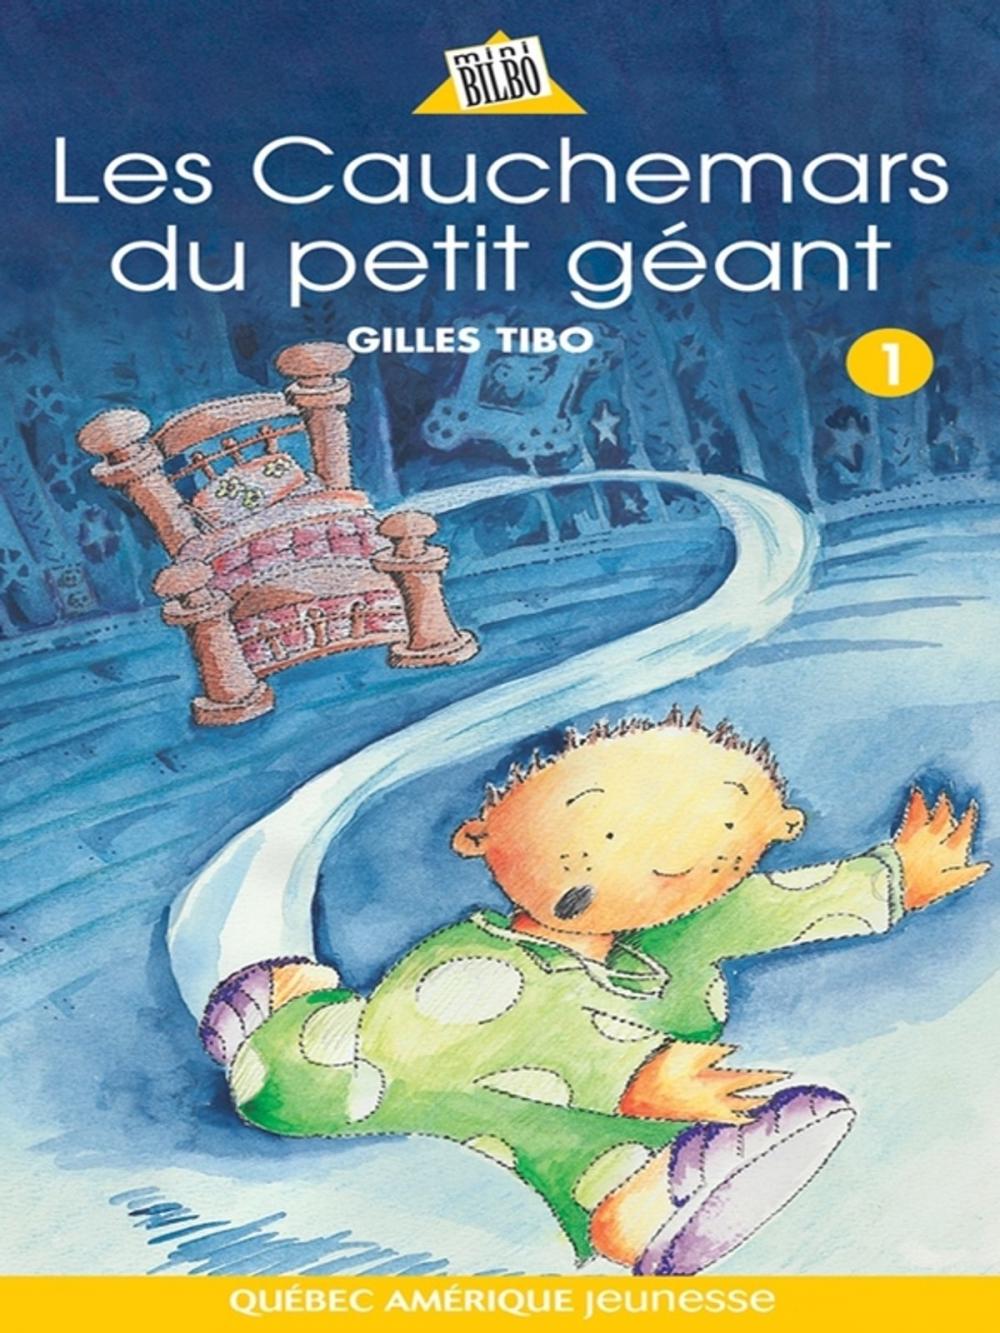 Big bigCover of Petit géant 01 - Les Cauchemars du petit géant